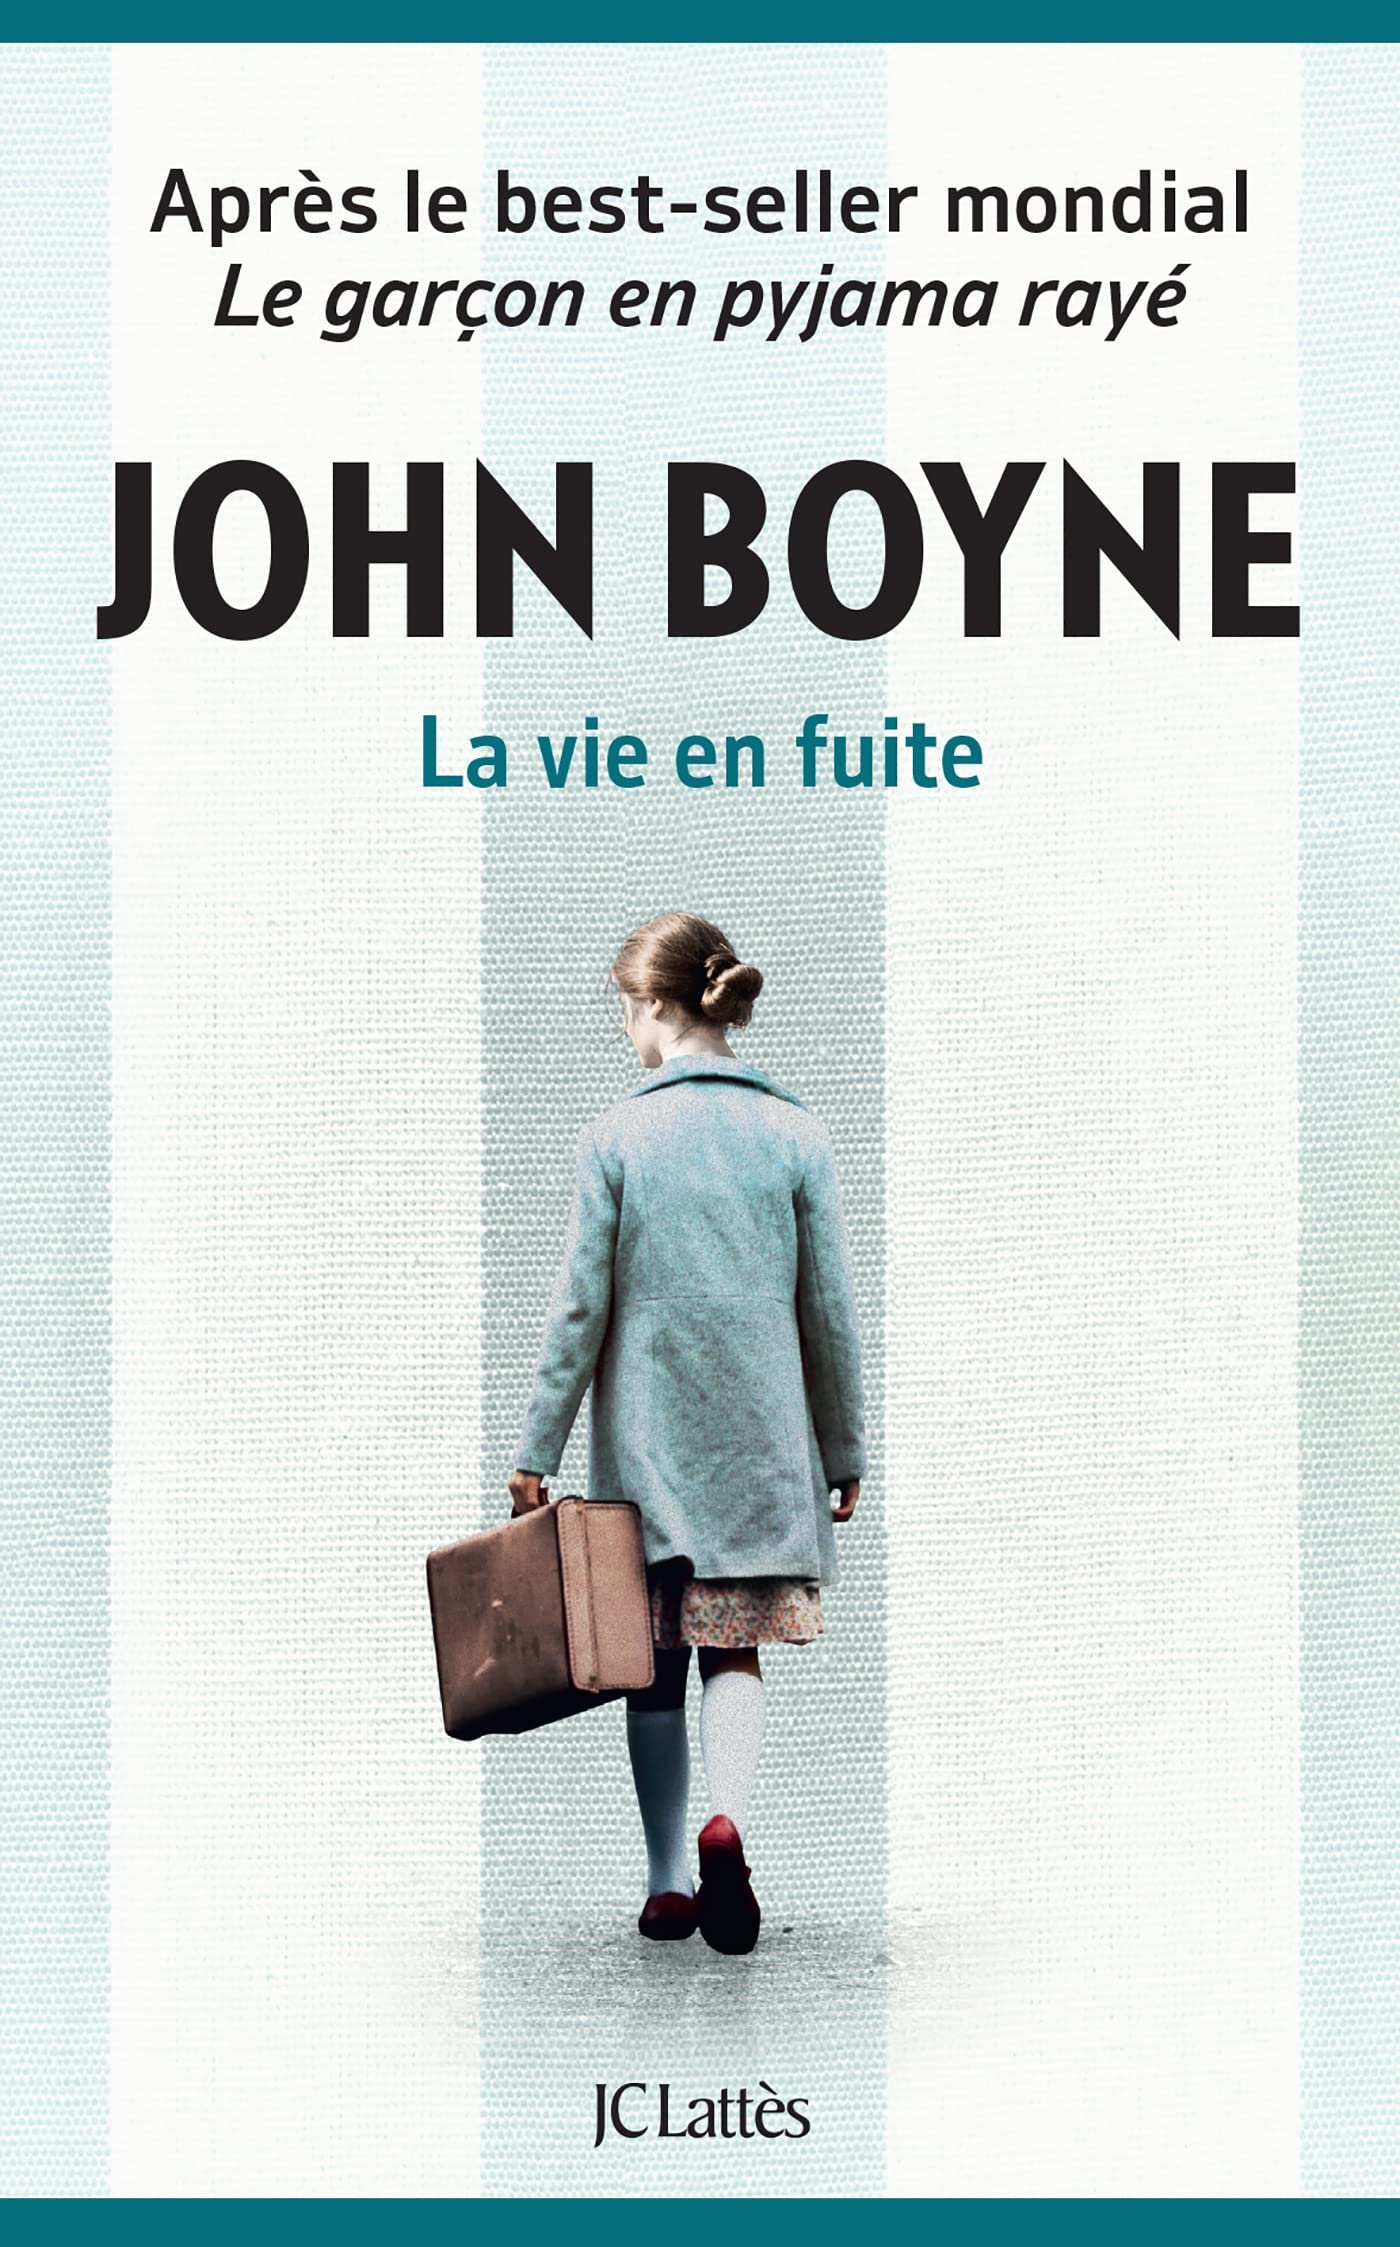 John Boyne – La vie en fuite